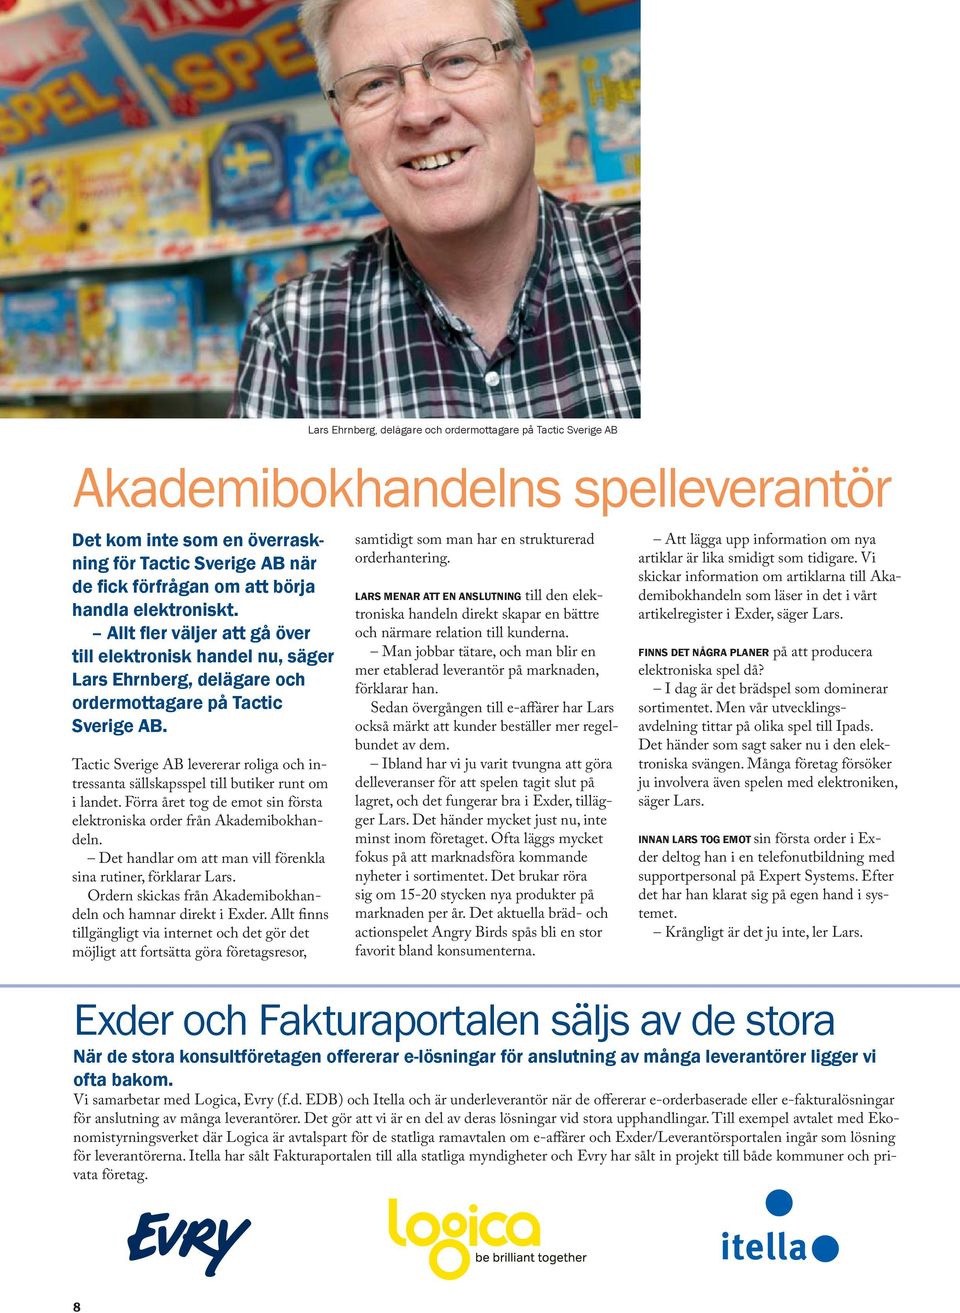 Tactic Sverige AB levererar roliga och intressanta sällskapsspel till butiker runt om i landet. Förra året tog de emot sin första elektroniska order från Akademibokhandeln.